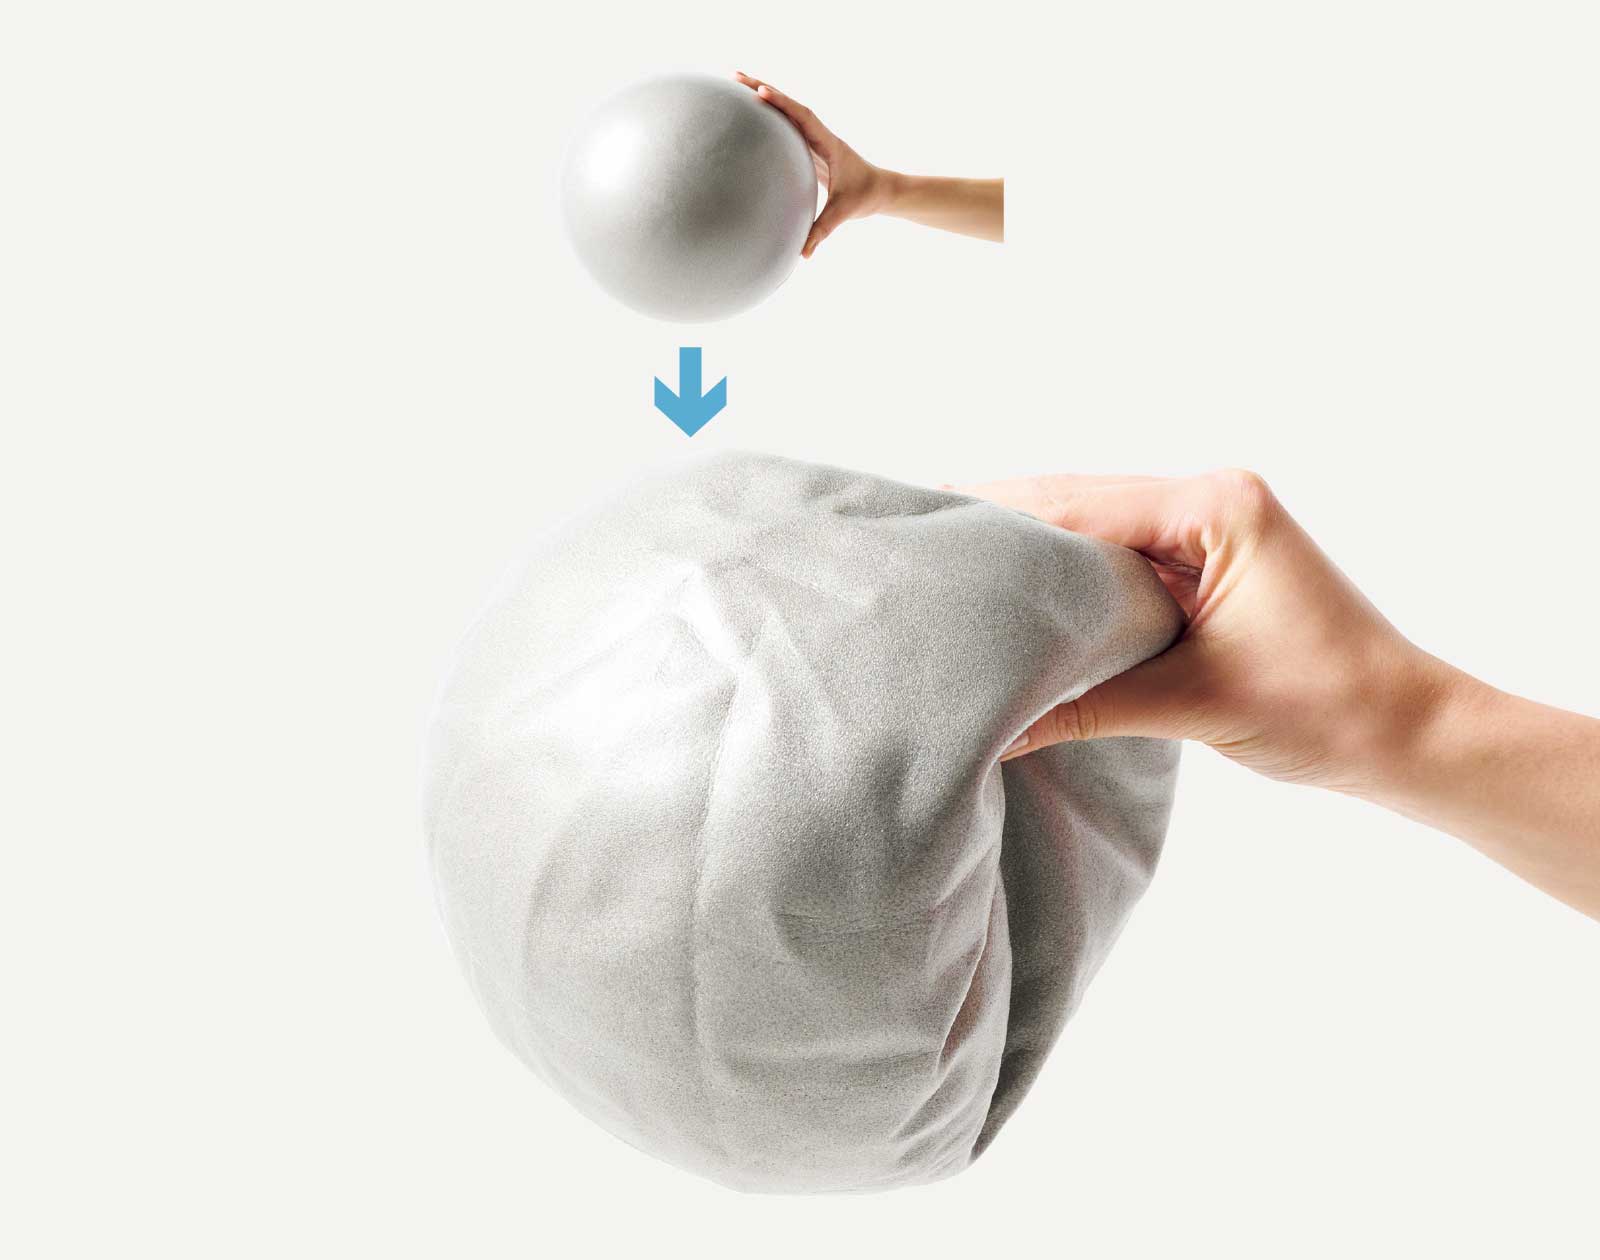 ミニボールエクササイズ 基礎編 腹 へこむ ミニボールは空気を抜いて使う